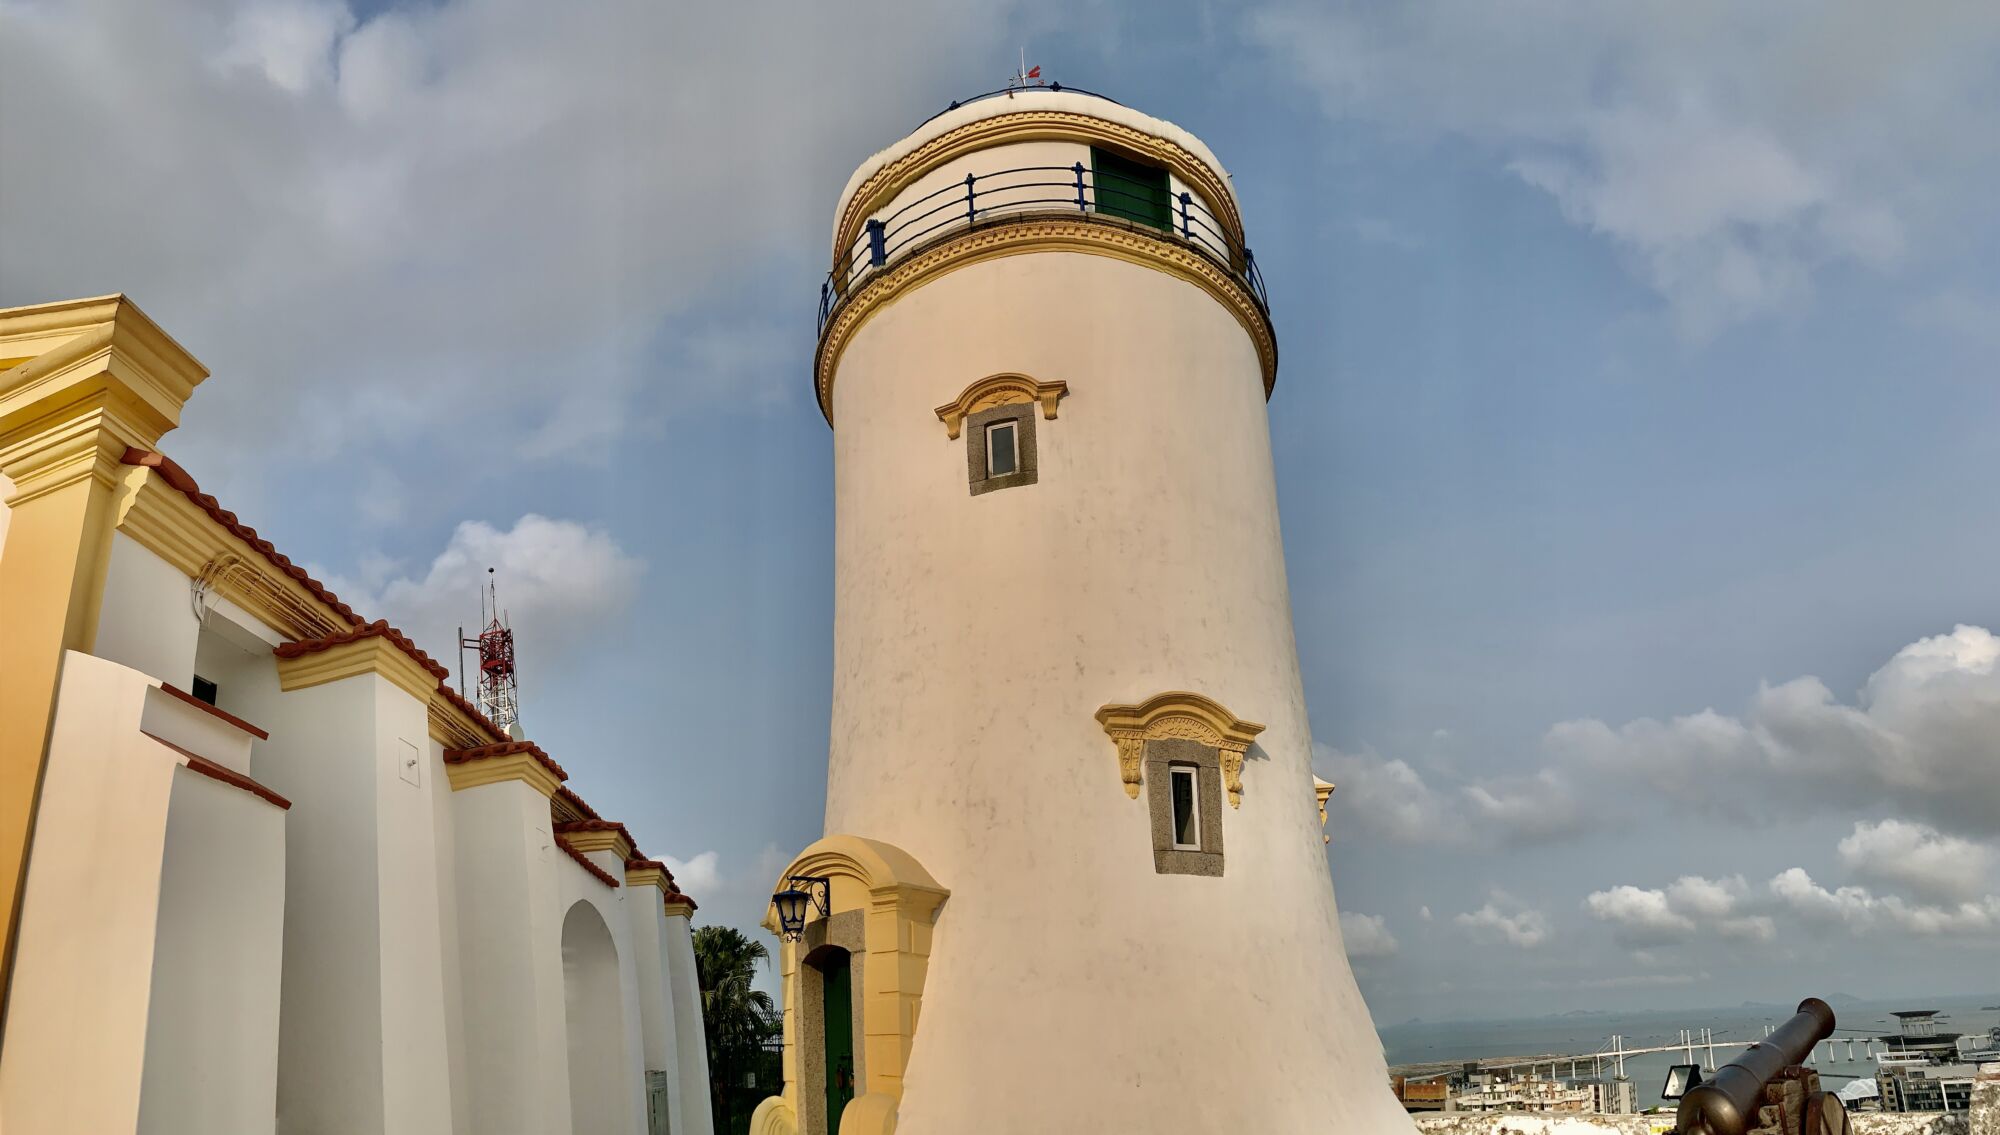 Guia Lighthouse Macau Lifestyle